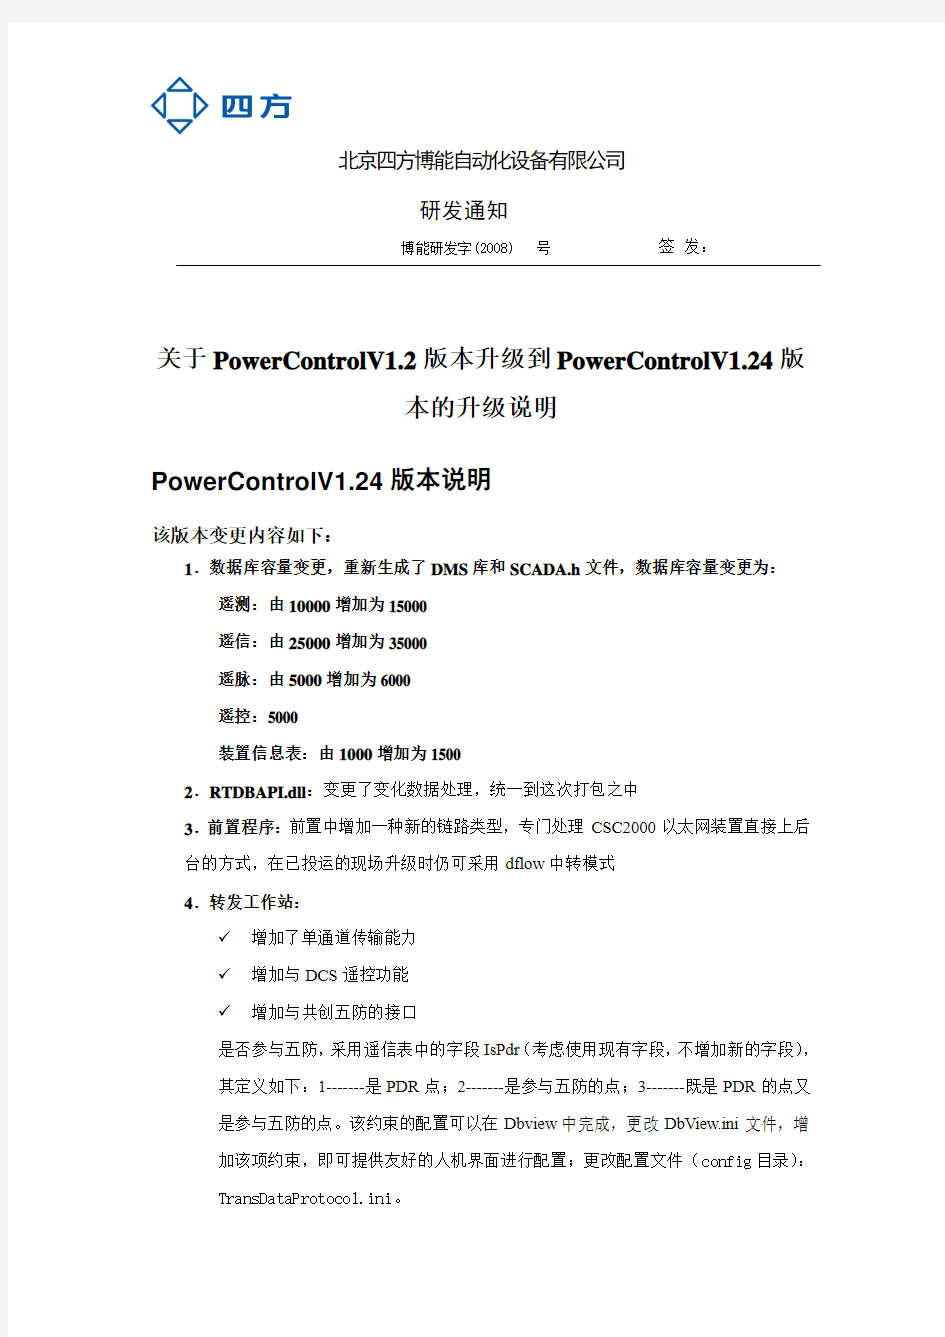 关于PowerControlV1.2版本升级到PowerControlV1.24版本的说明